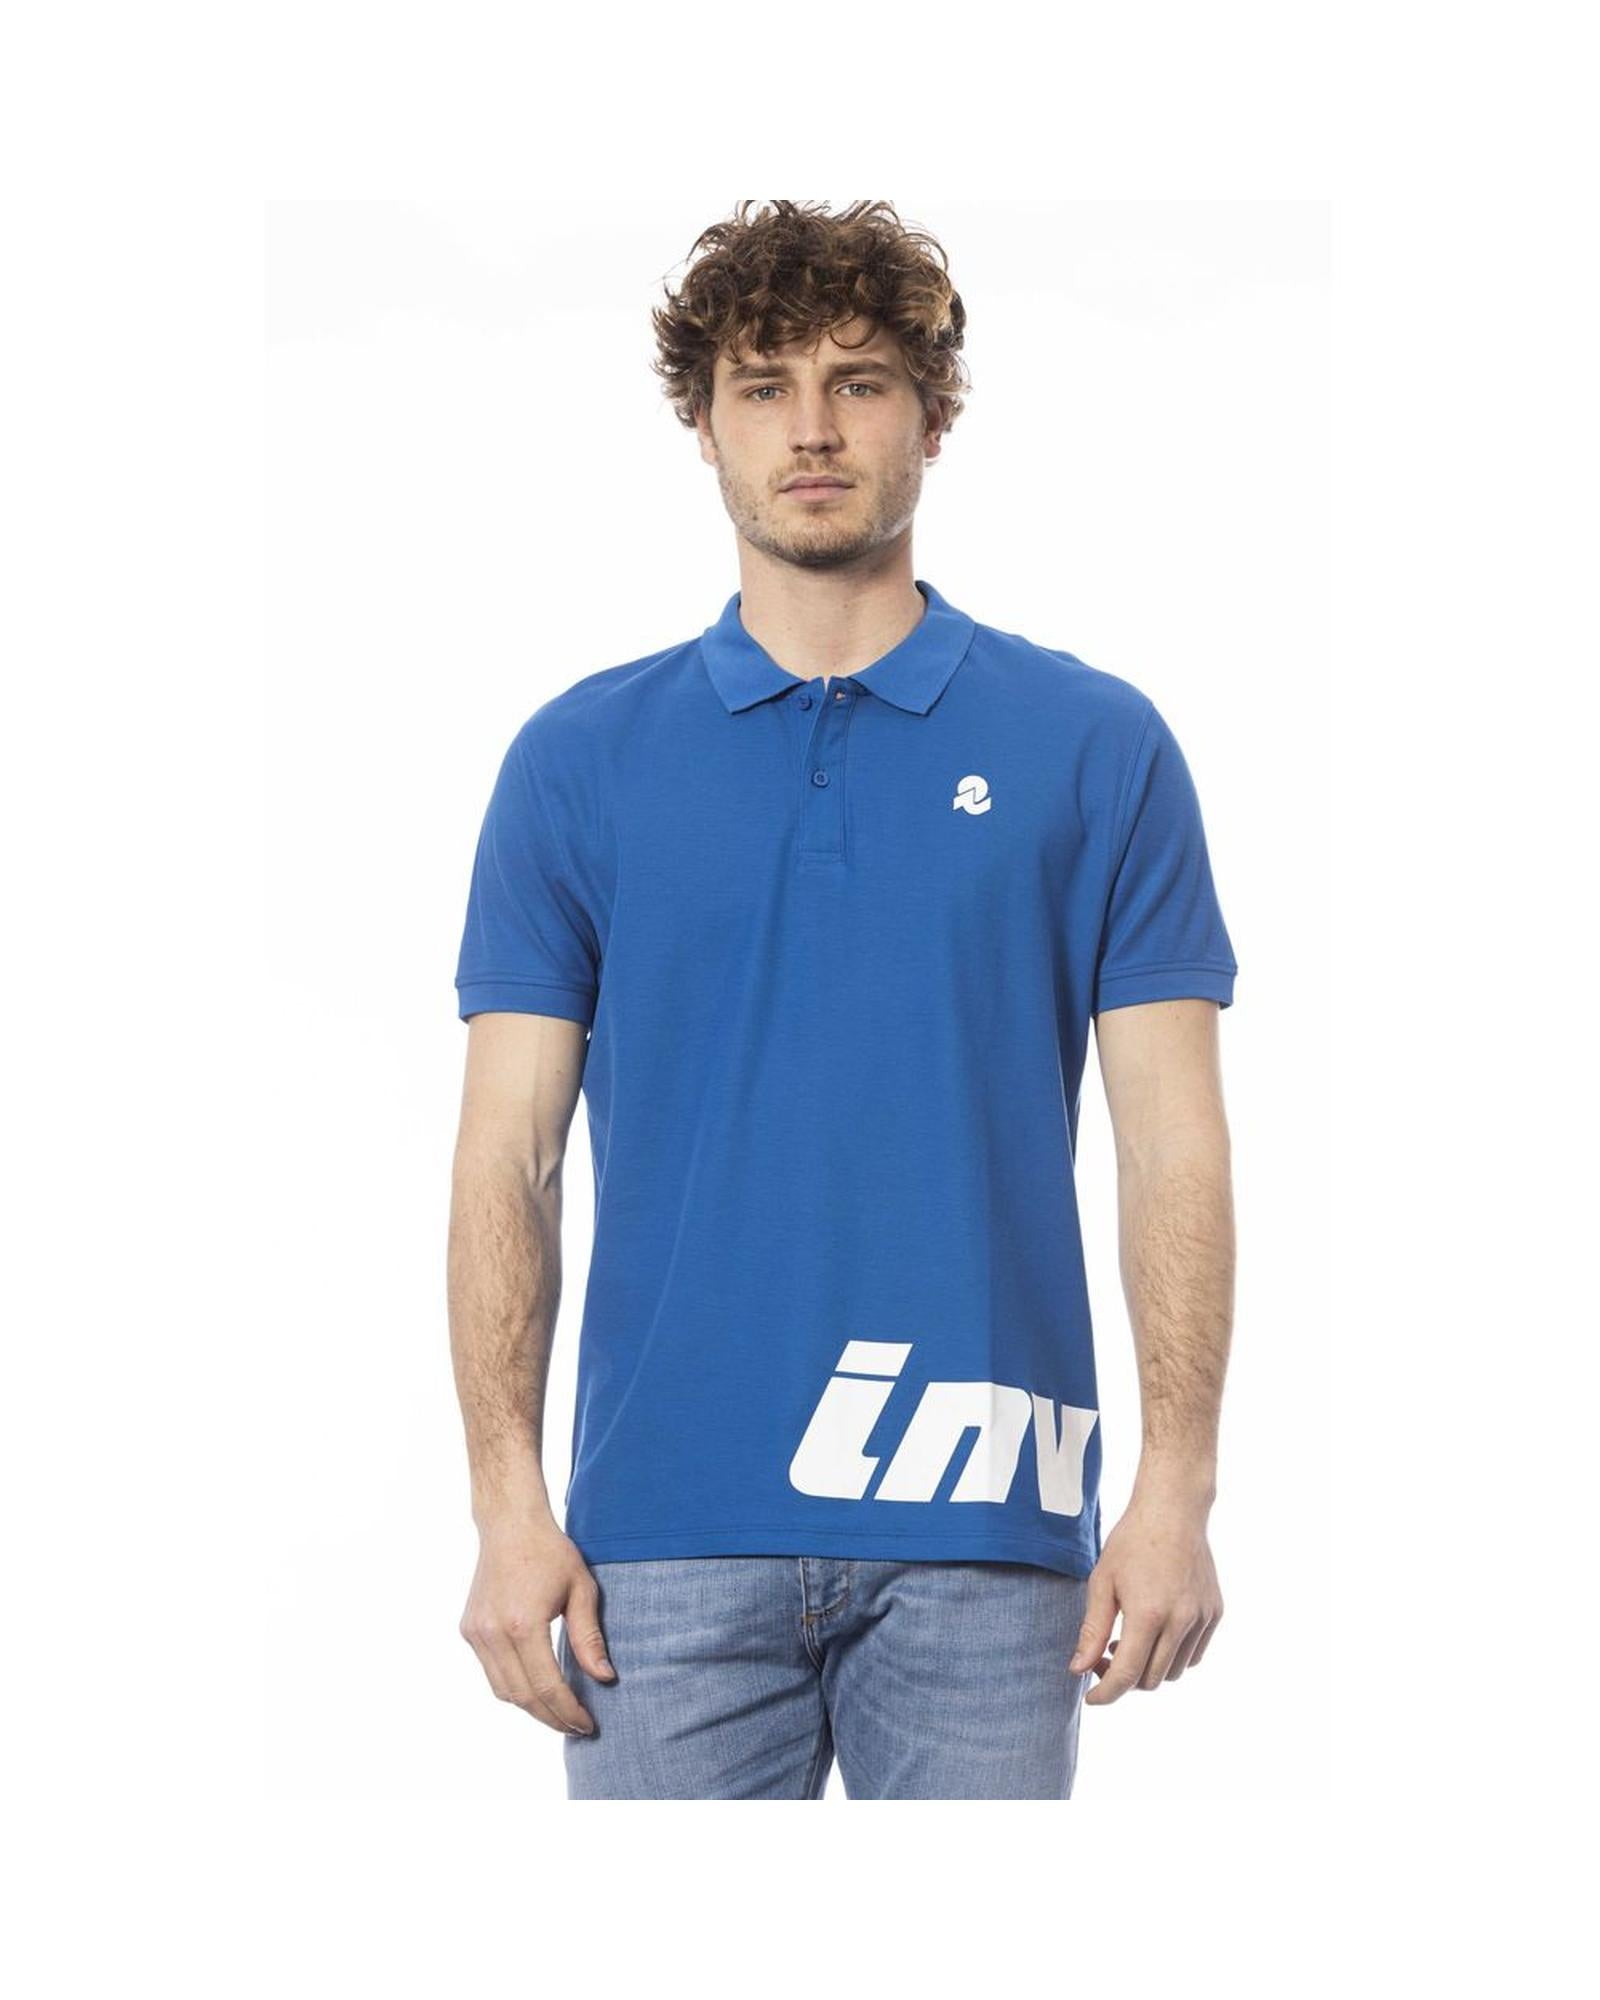 Men's Blue Cotton Polo Shirt - L